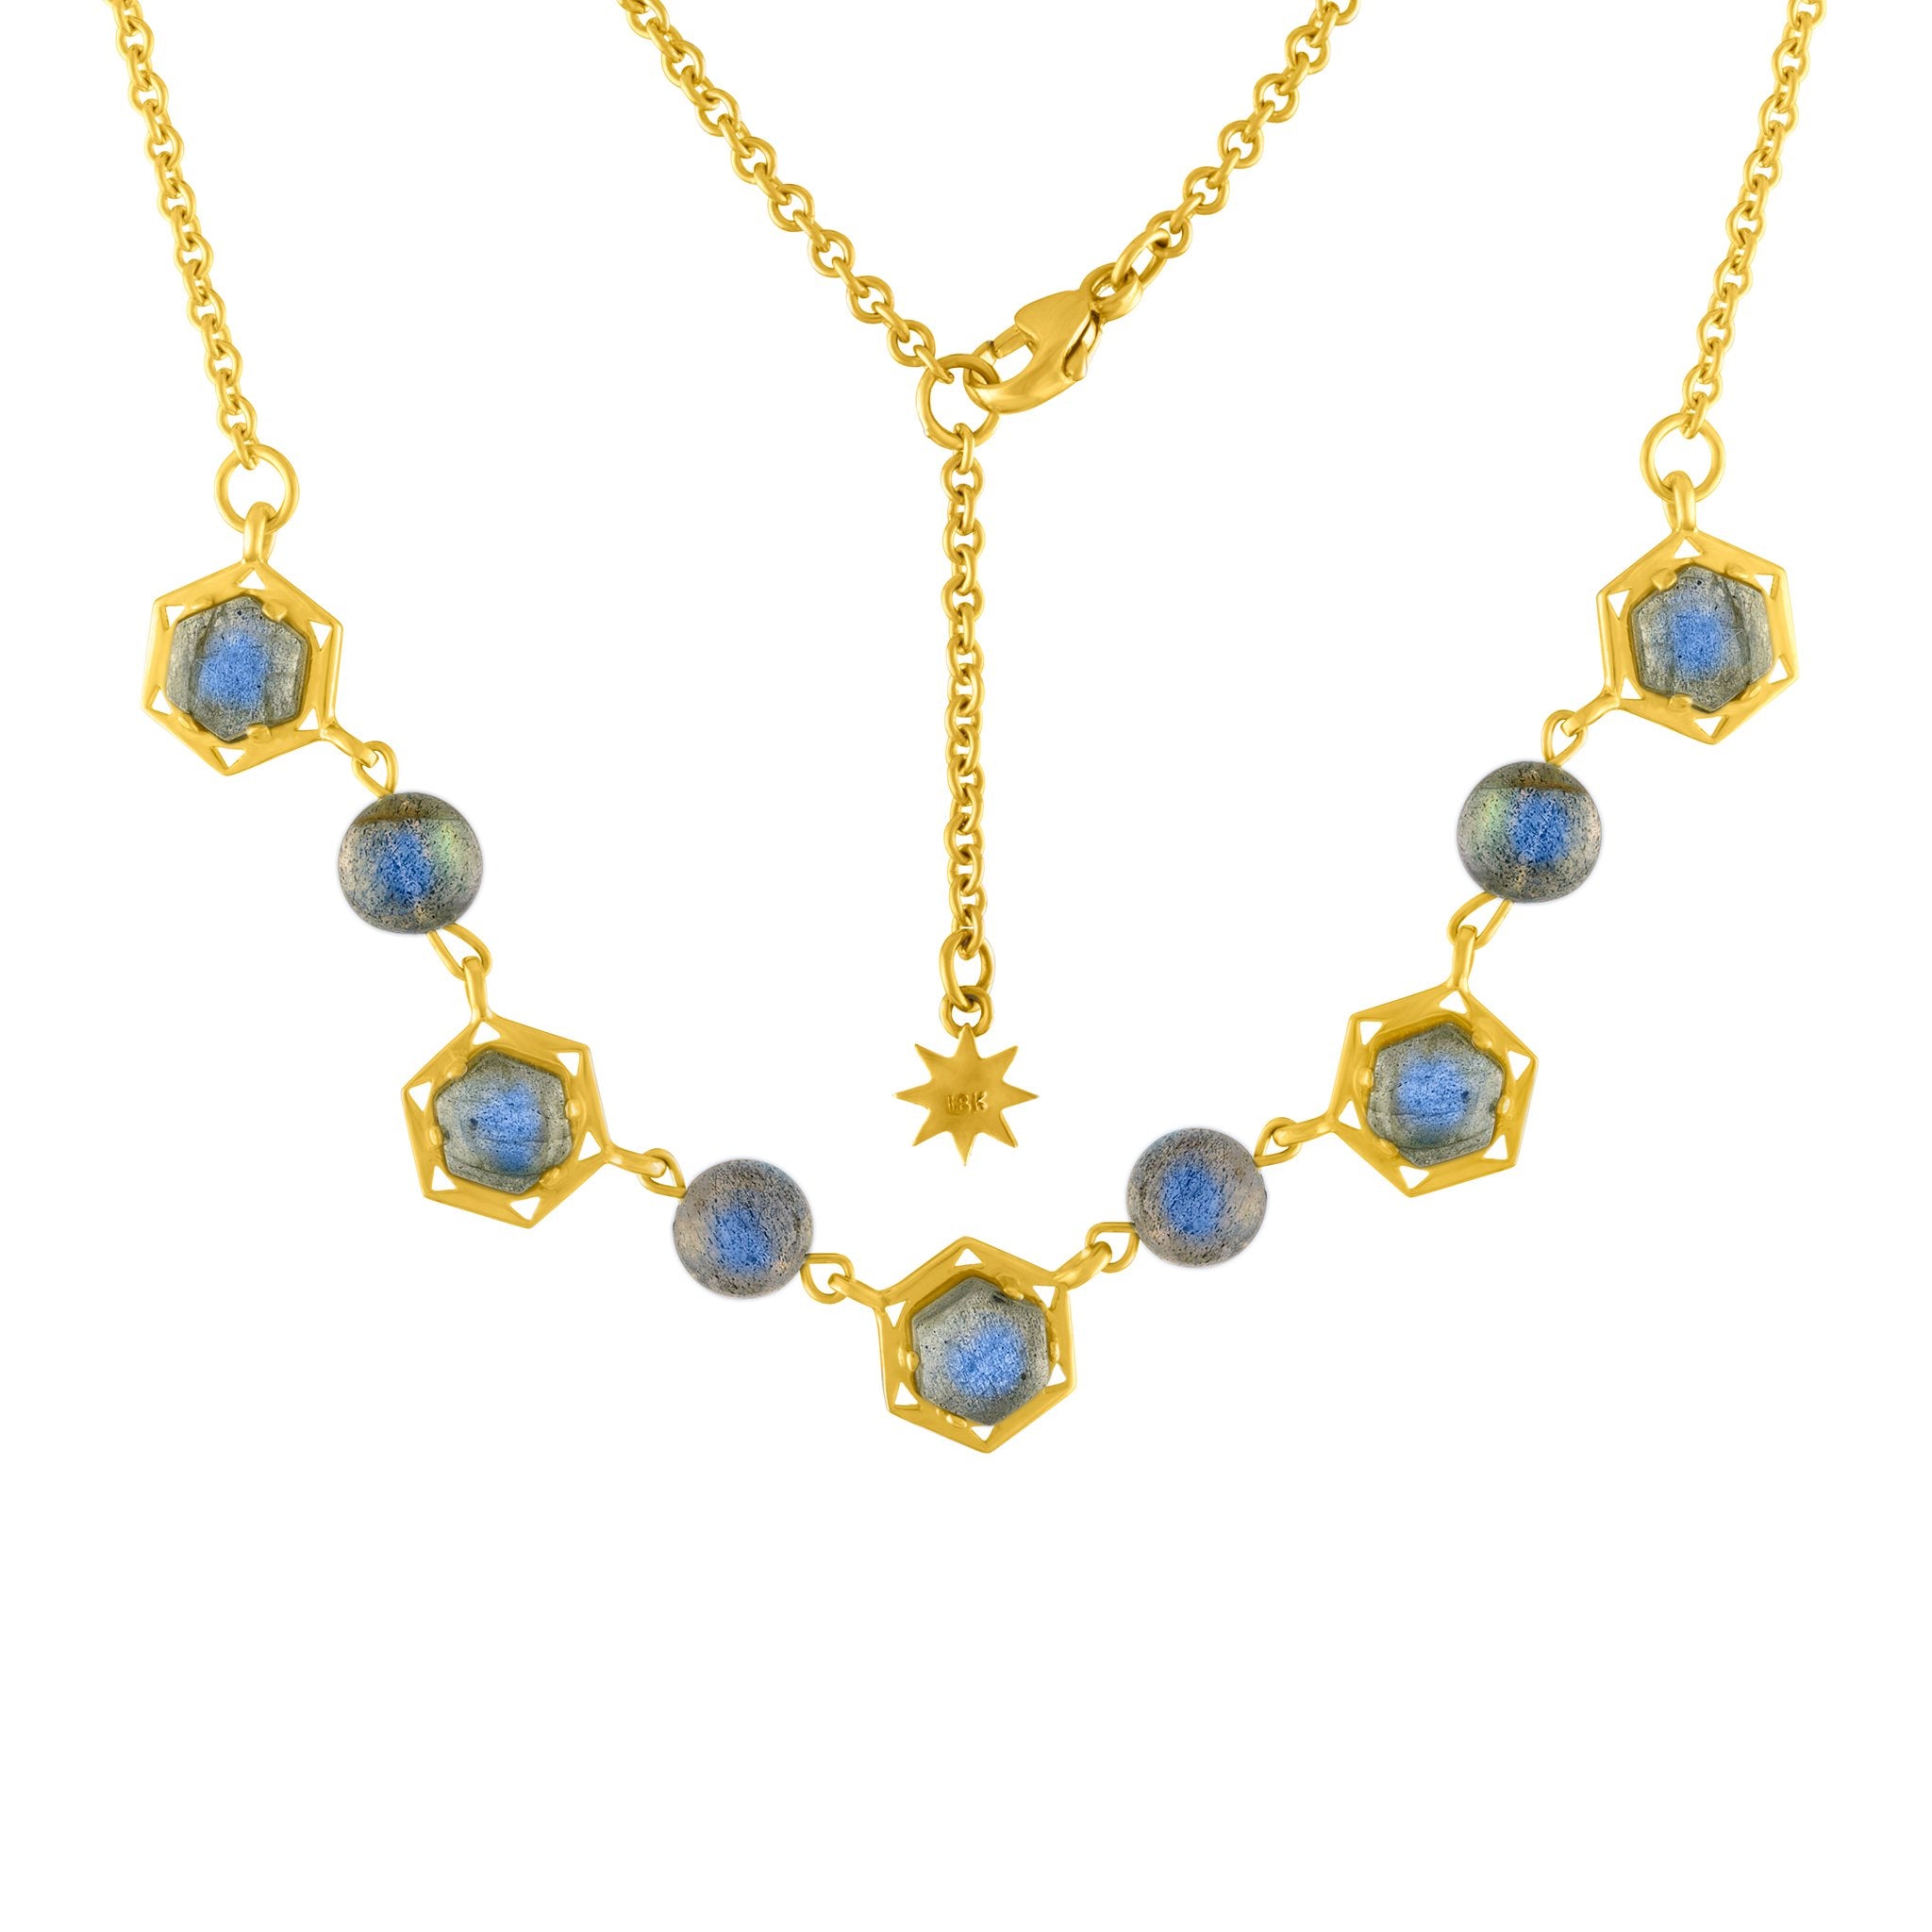 Cosmo Labradorite Choker Necklace: 18k Gold, Labradorite Cabs, Labradorite Beads